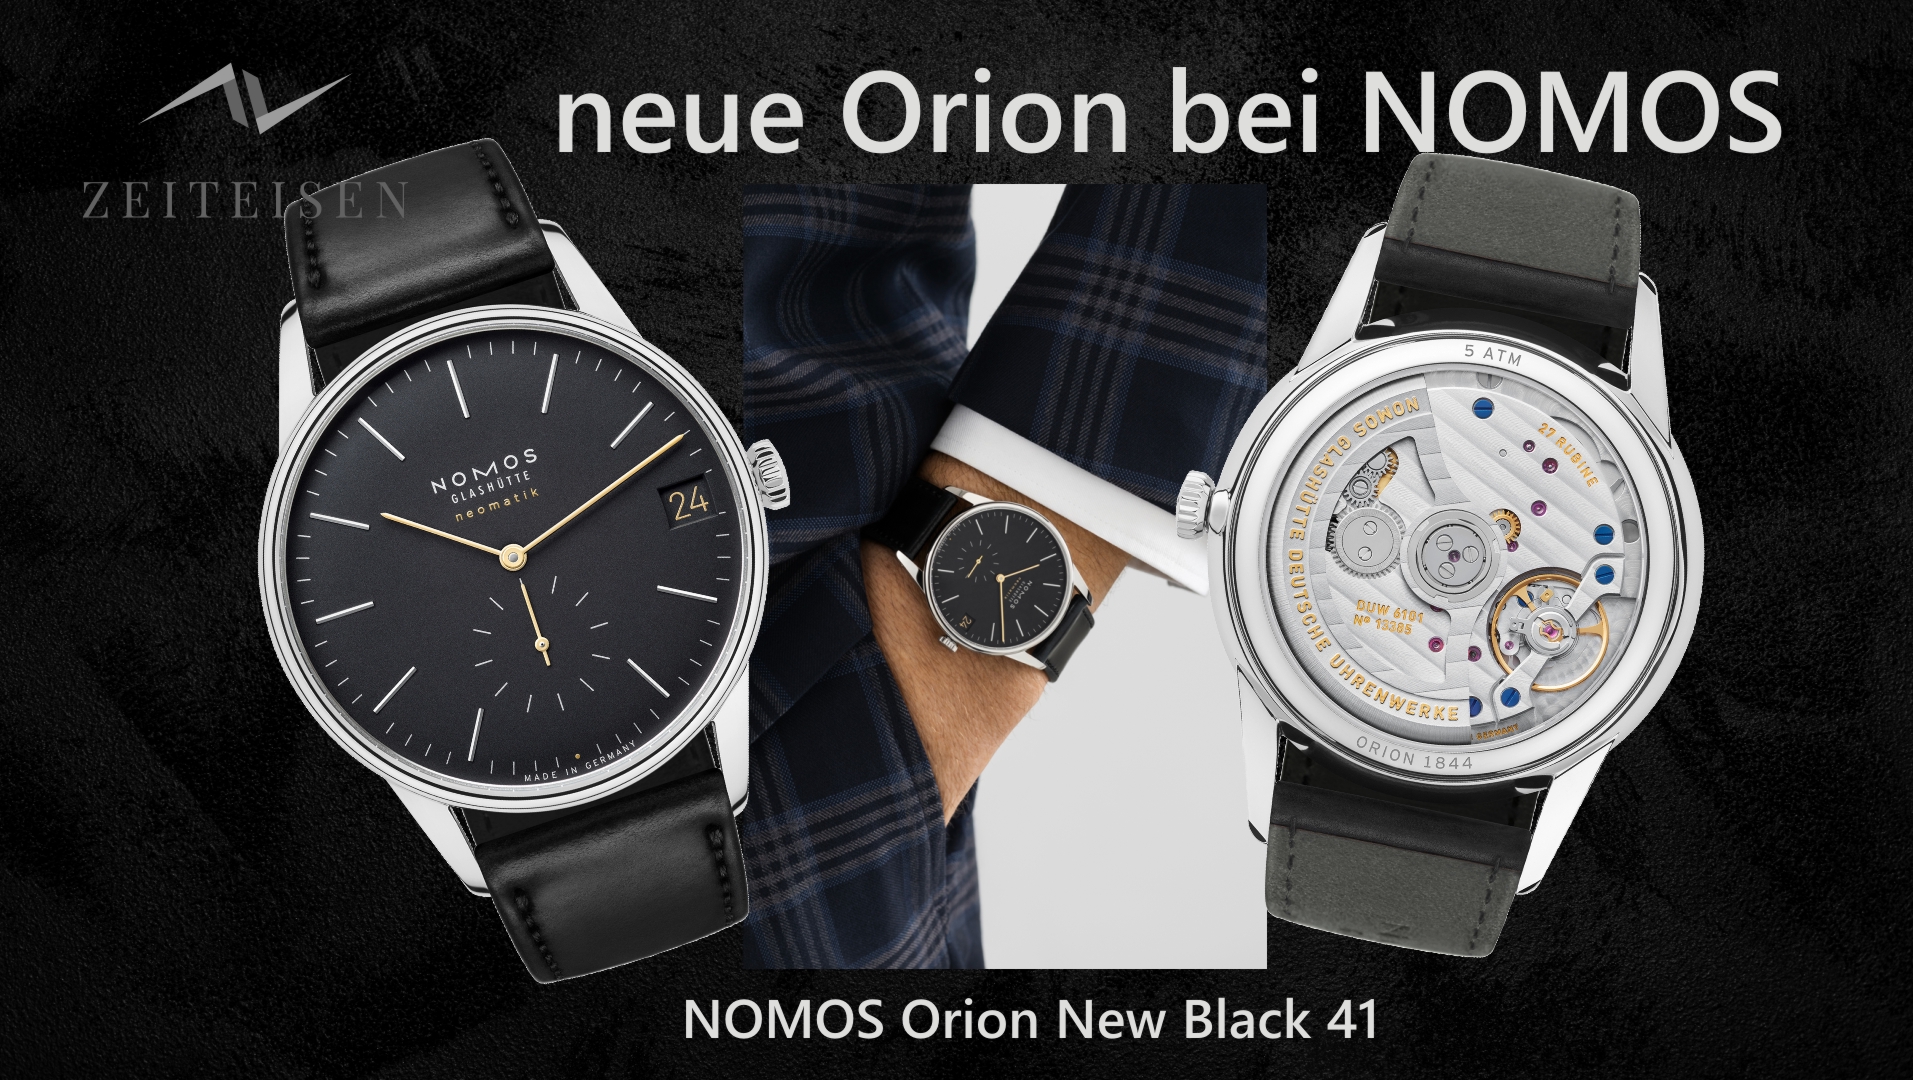 Review zur NOMOS Orion New Black 41